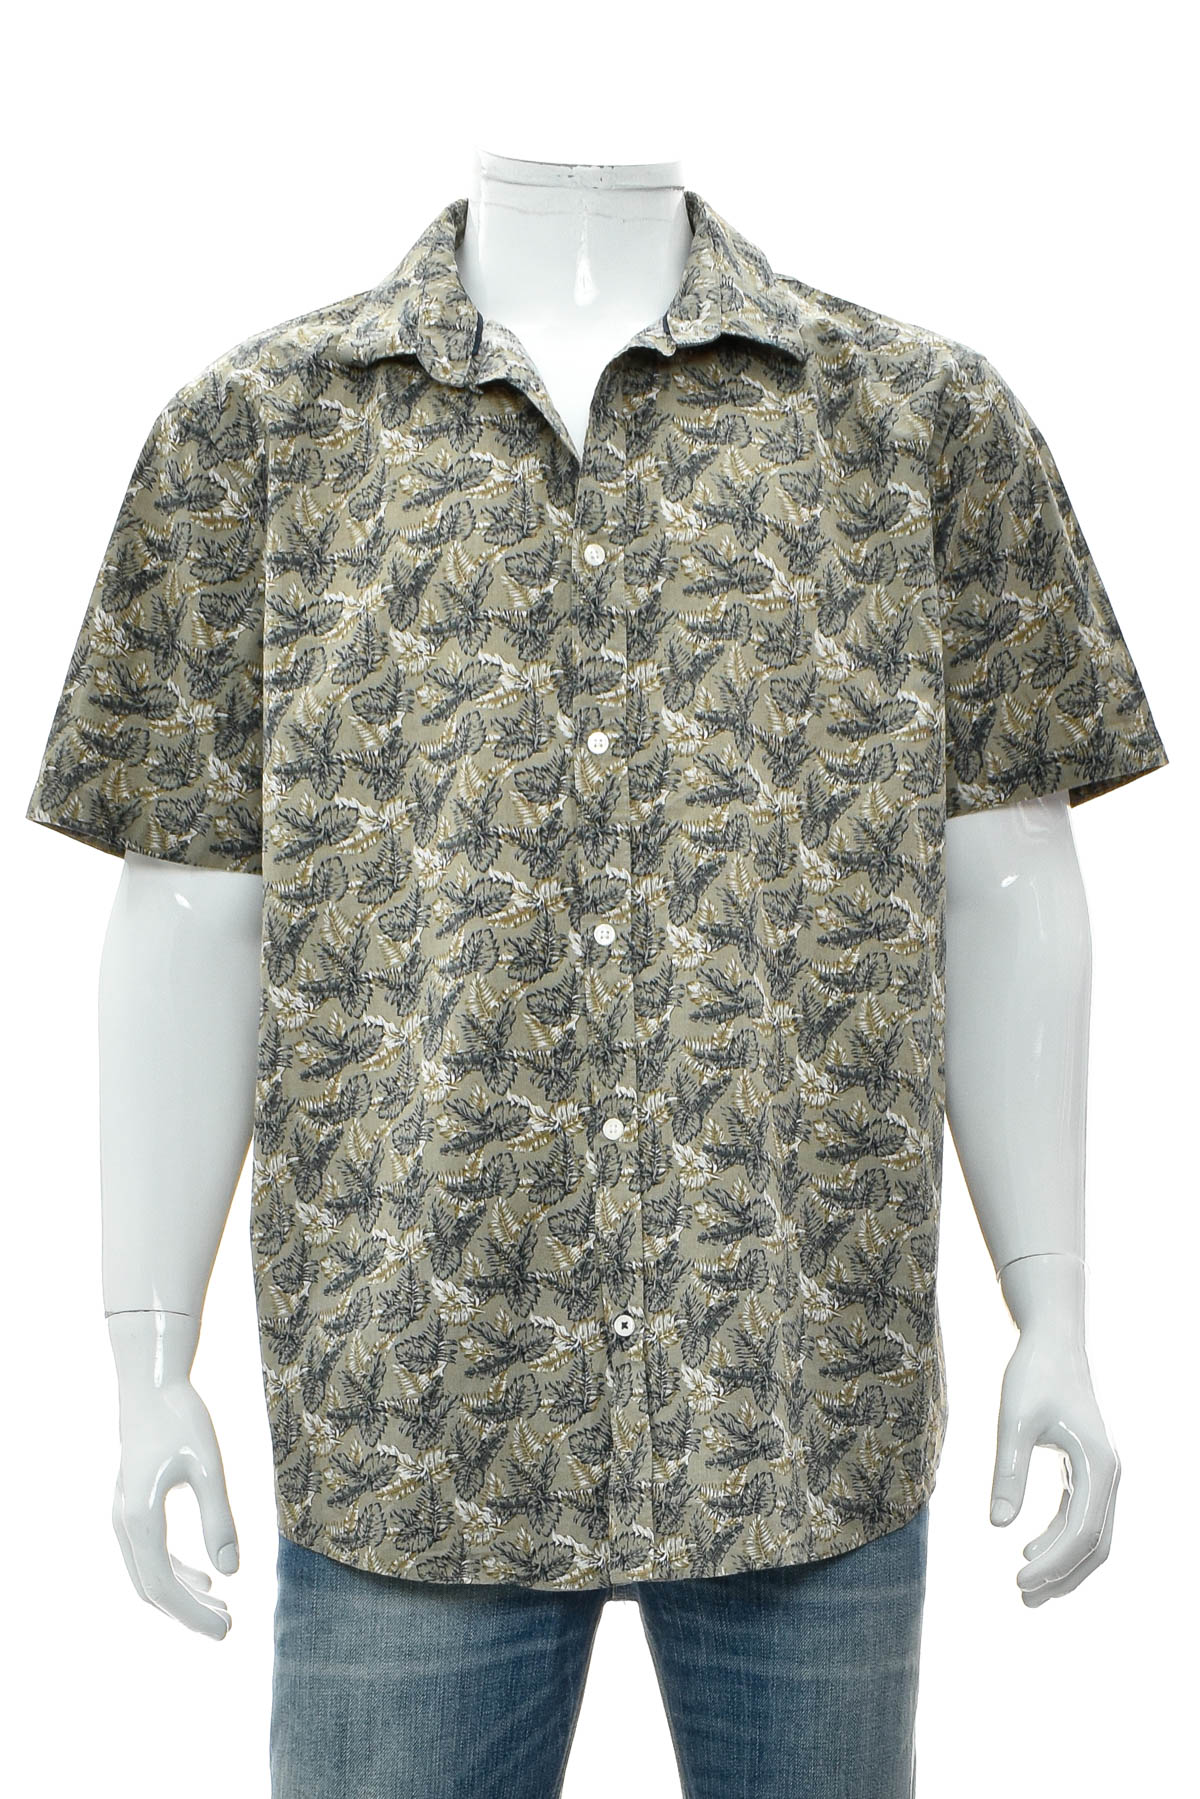 Ανδρικό πουκάμισο - IVEO by jbc - 0